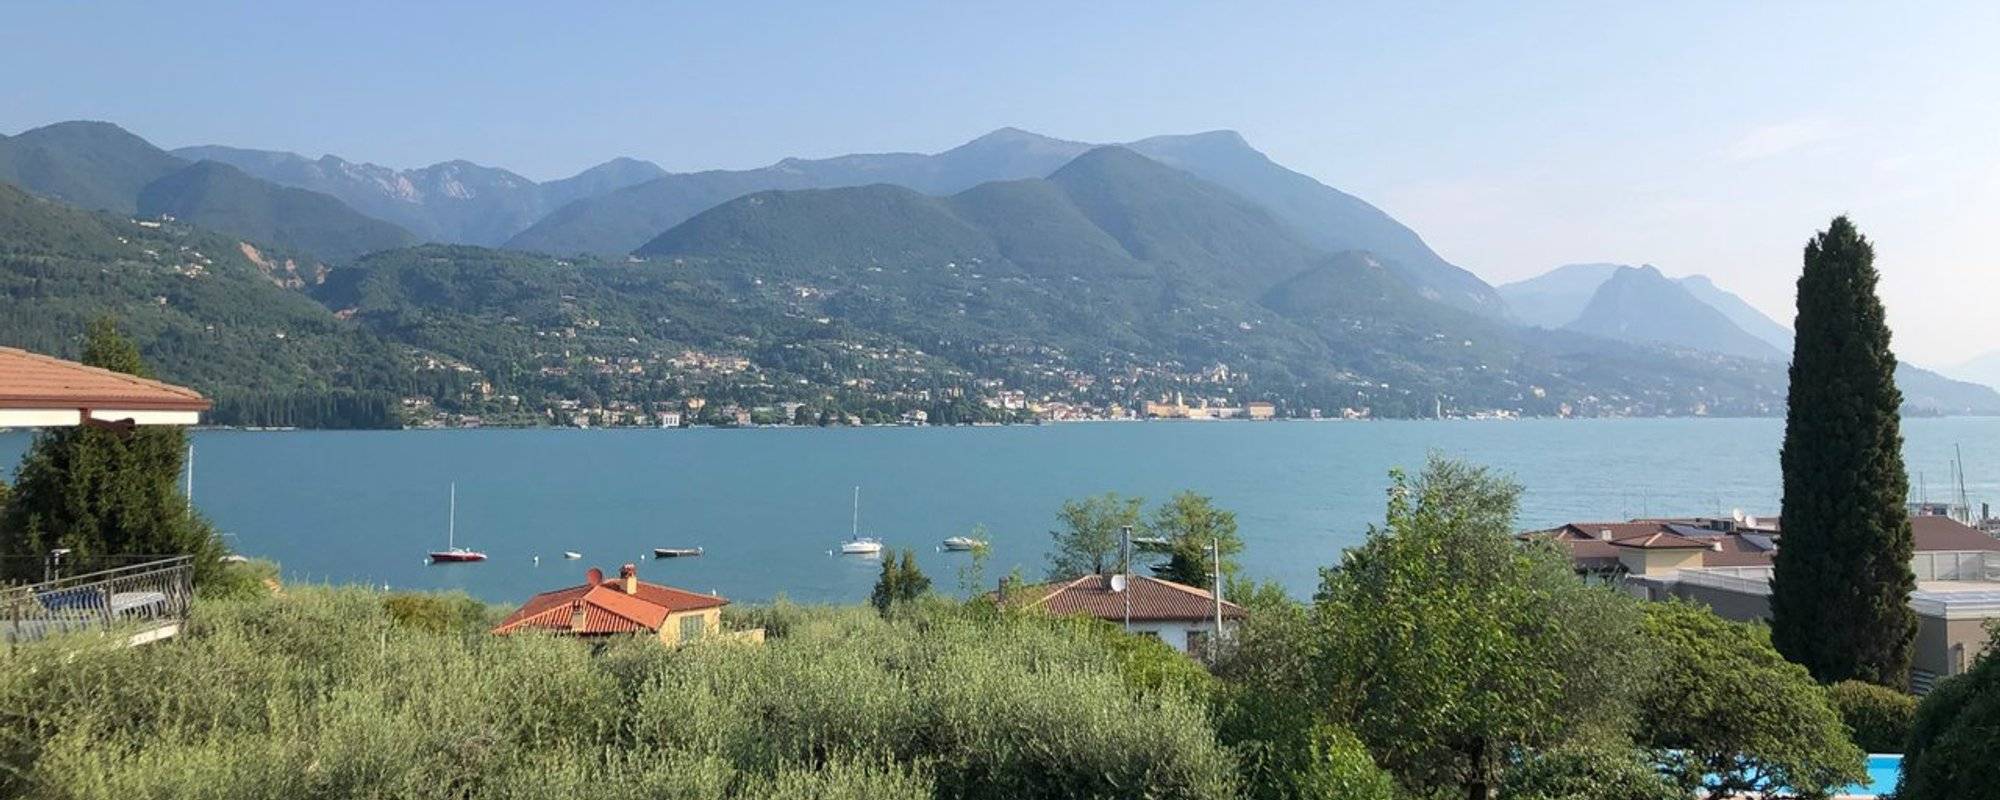 My Summer Trip Photos - Italy - Garda Lake